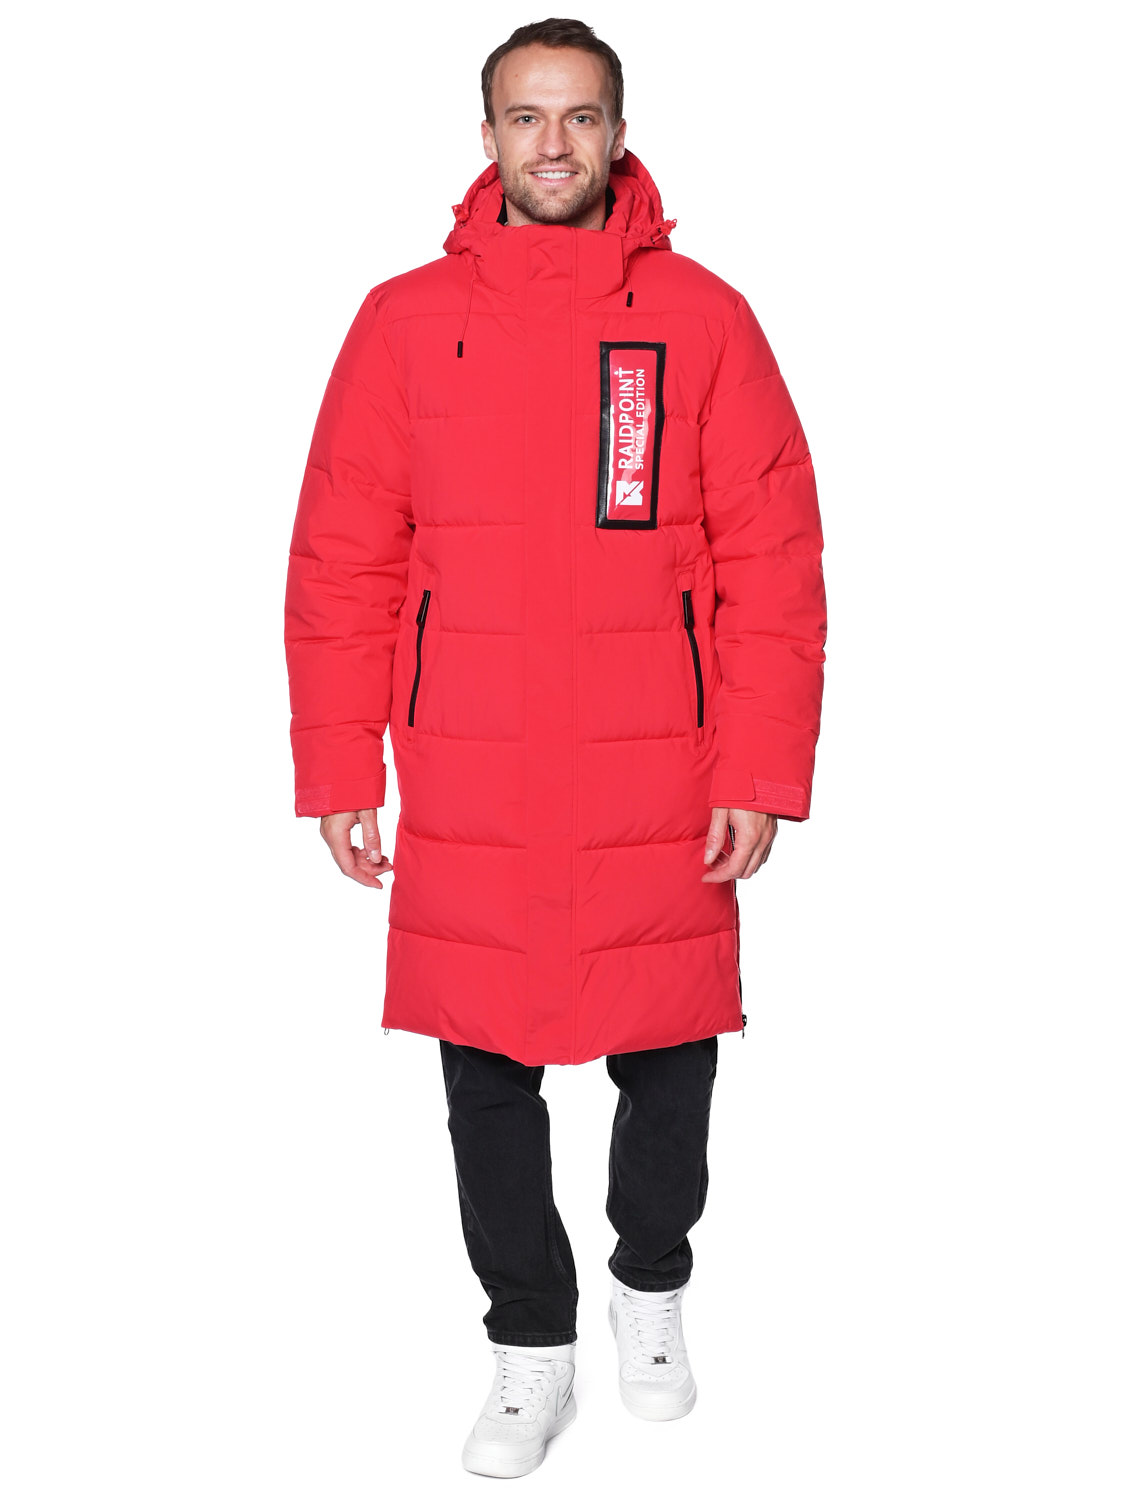 Пальто A-8902 Красный